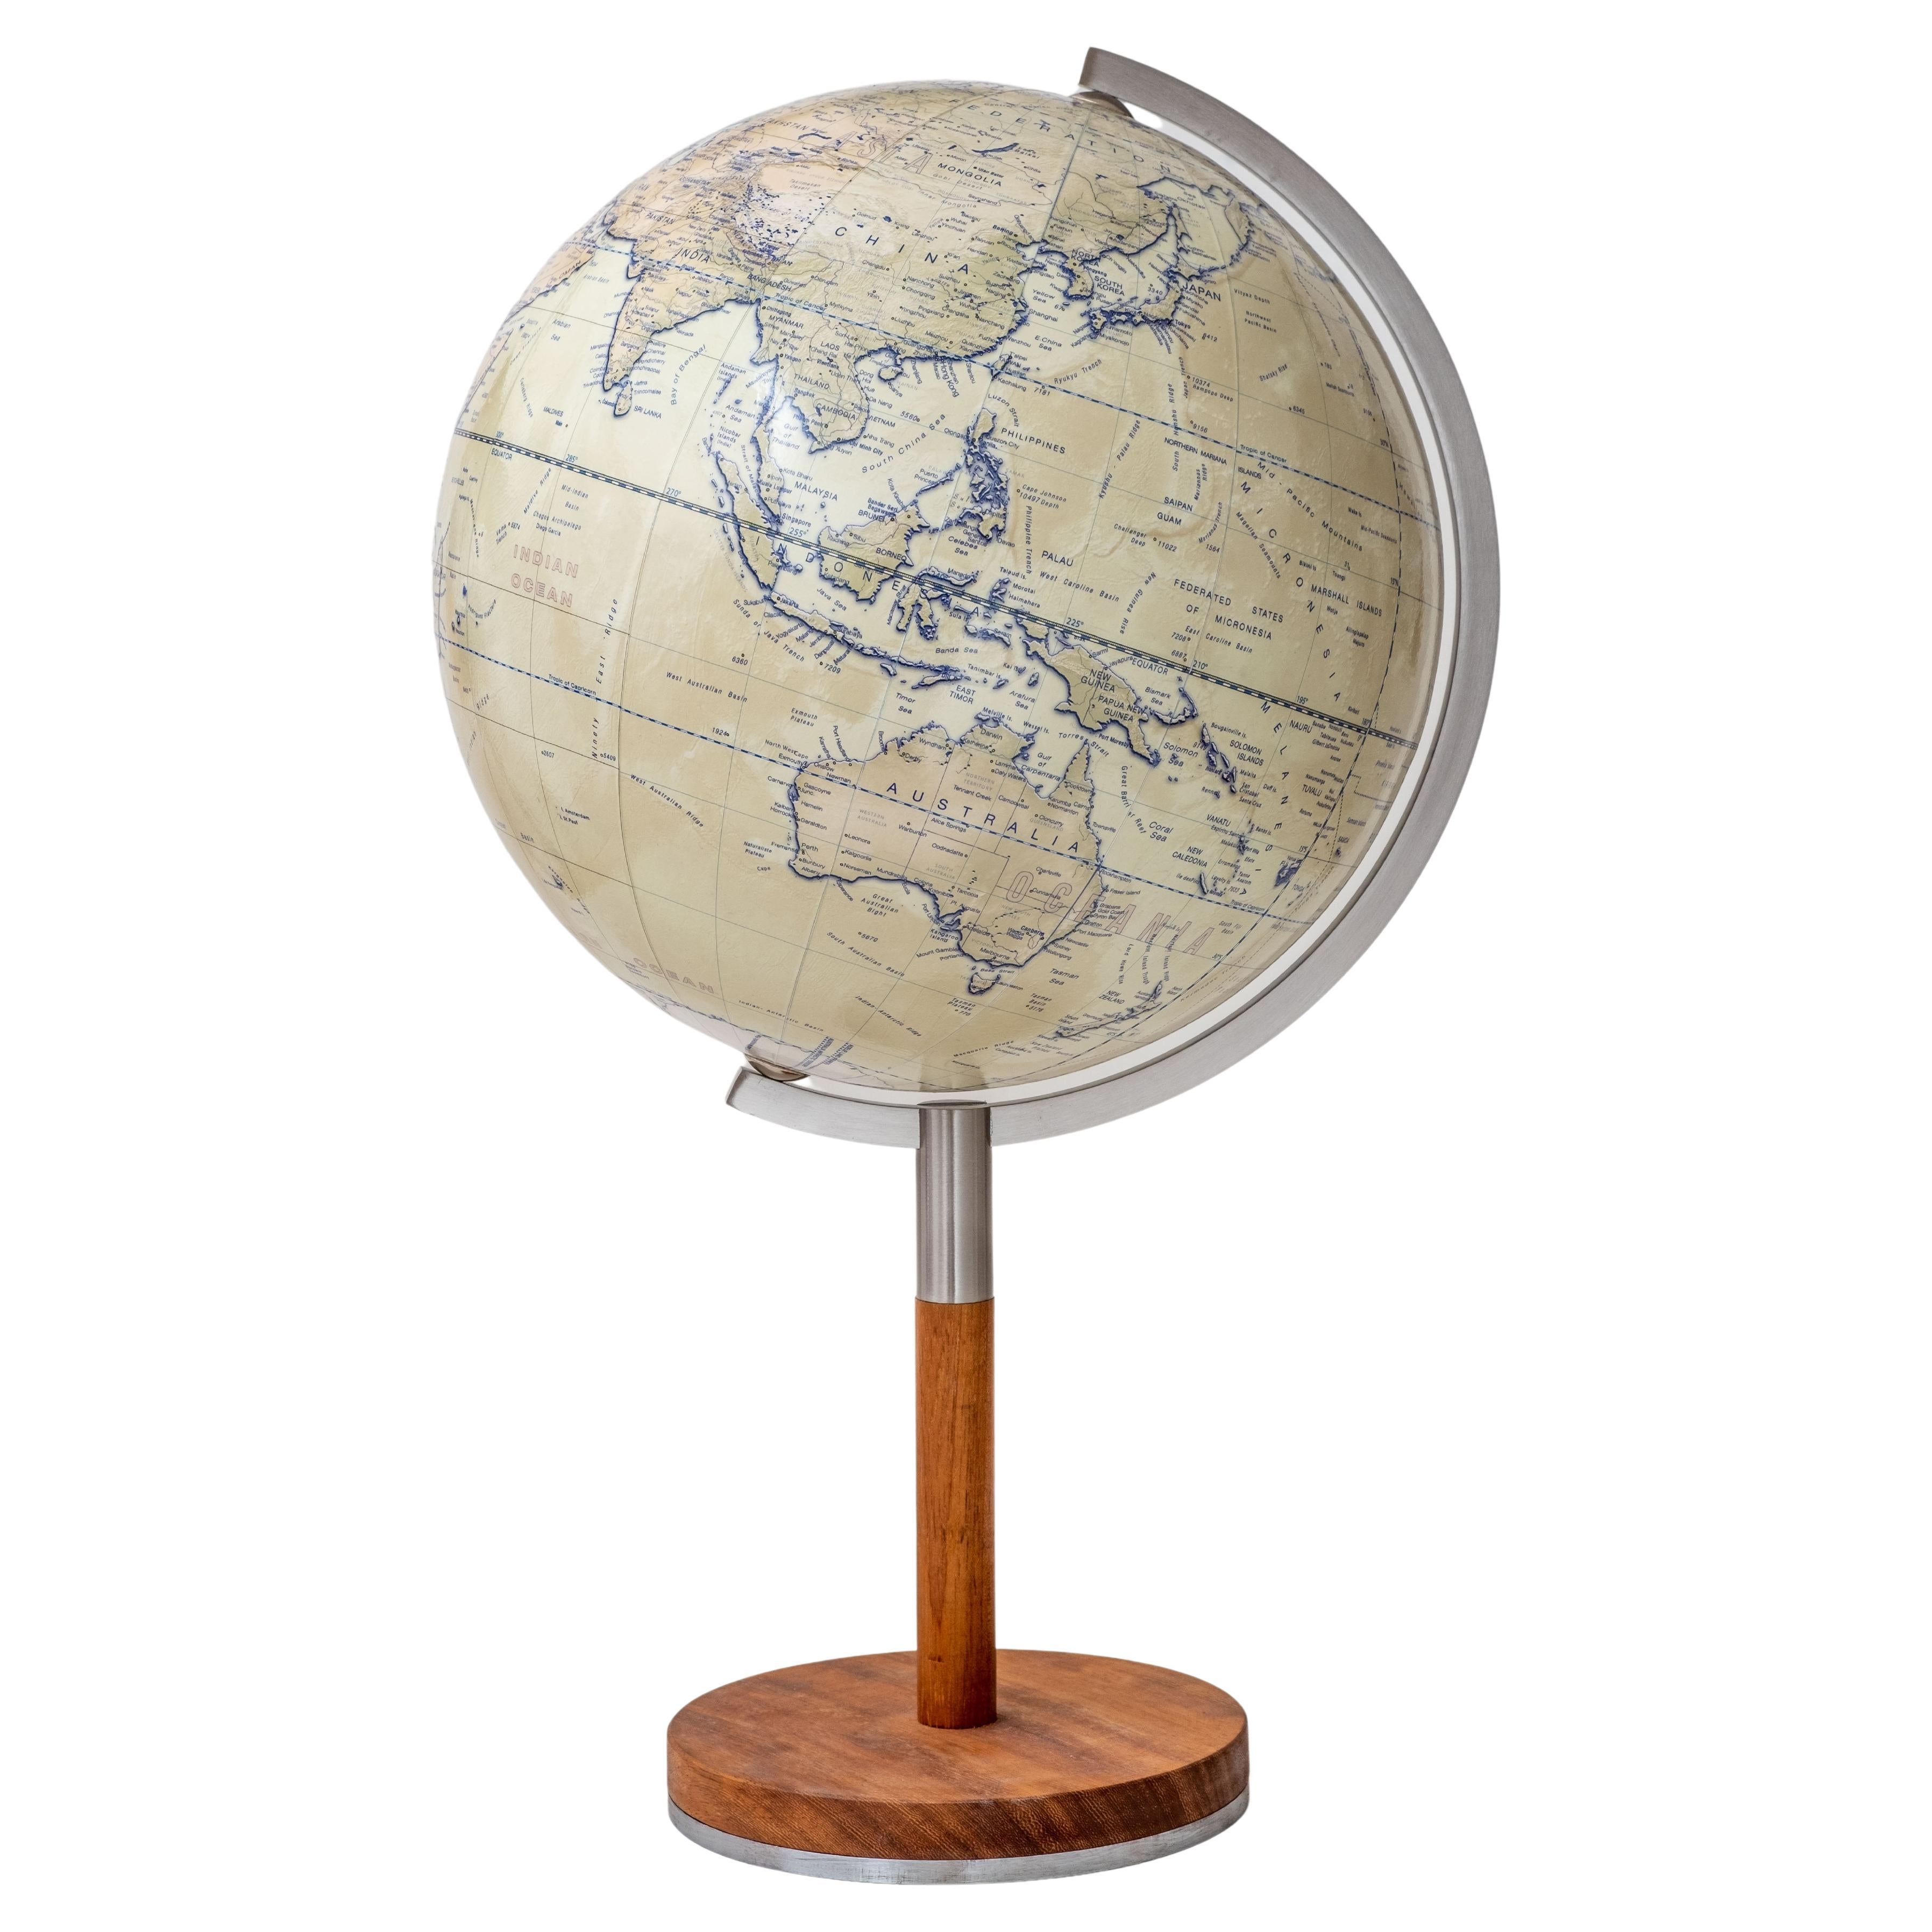 13" diameter handmade table globe For Sale